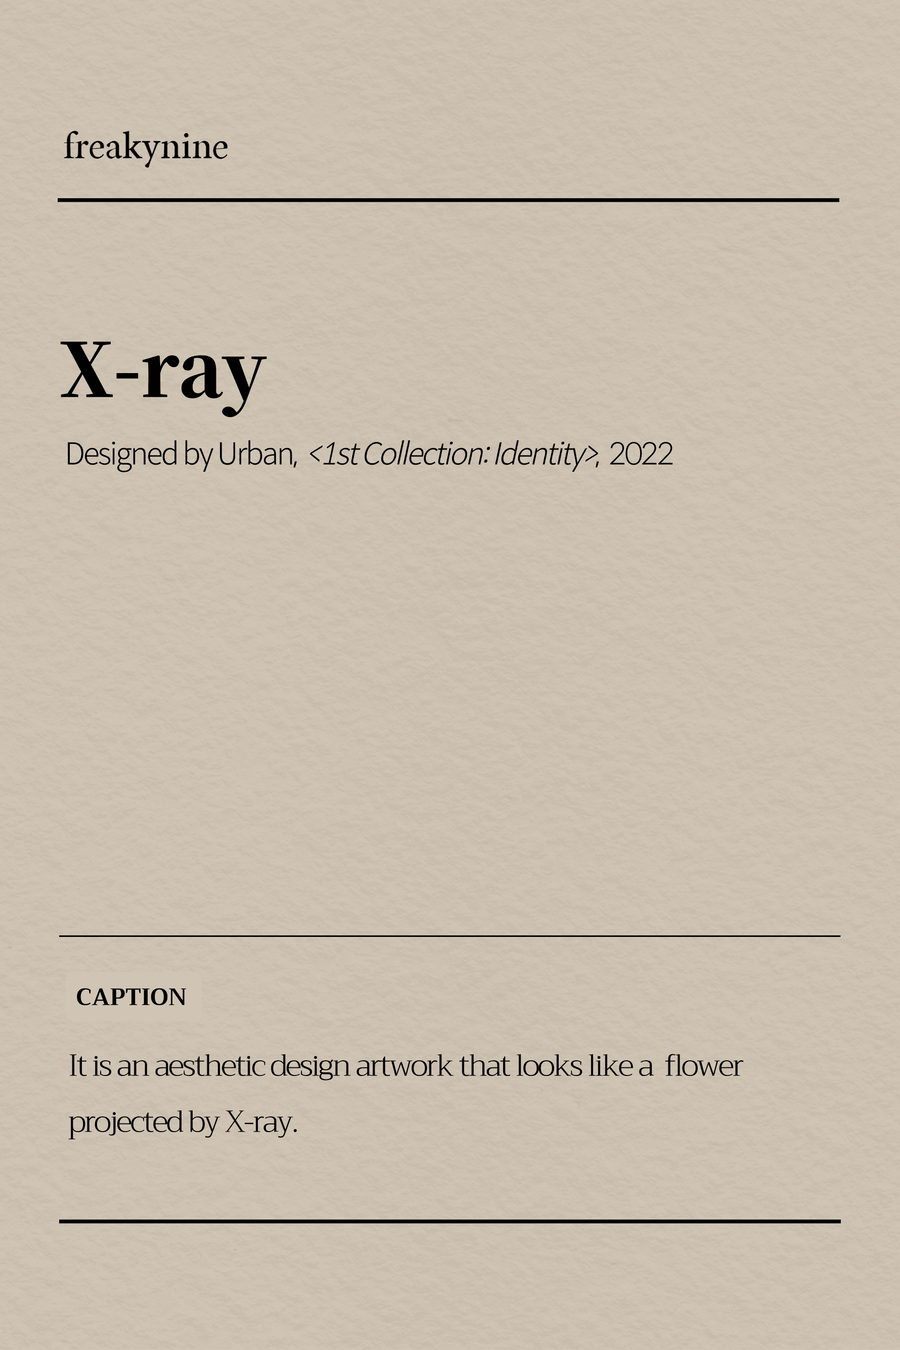 (Urban) X-ray (2EA) - freakynine